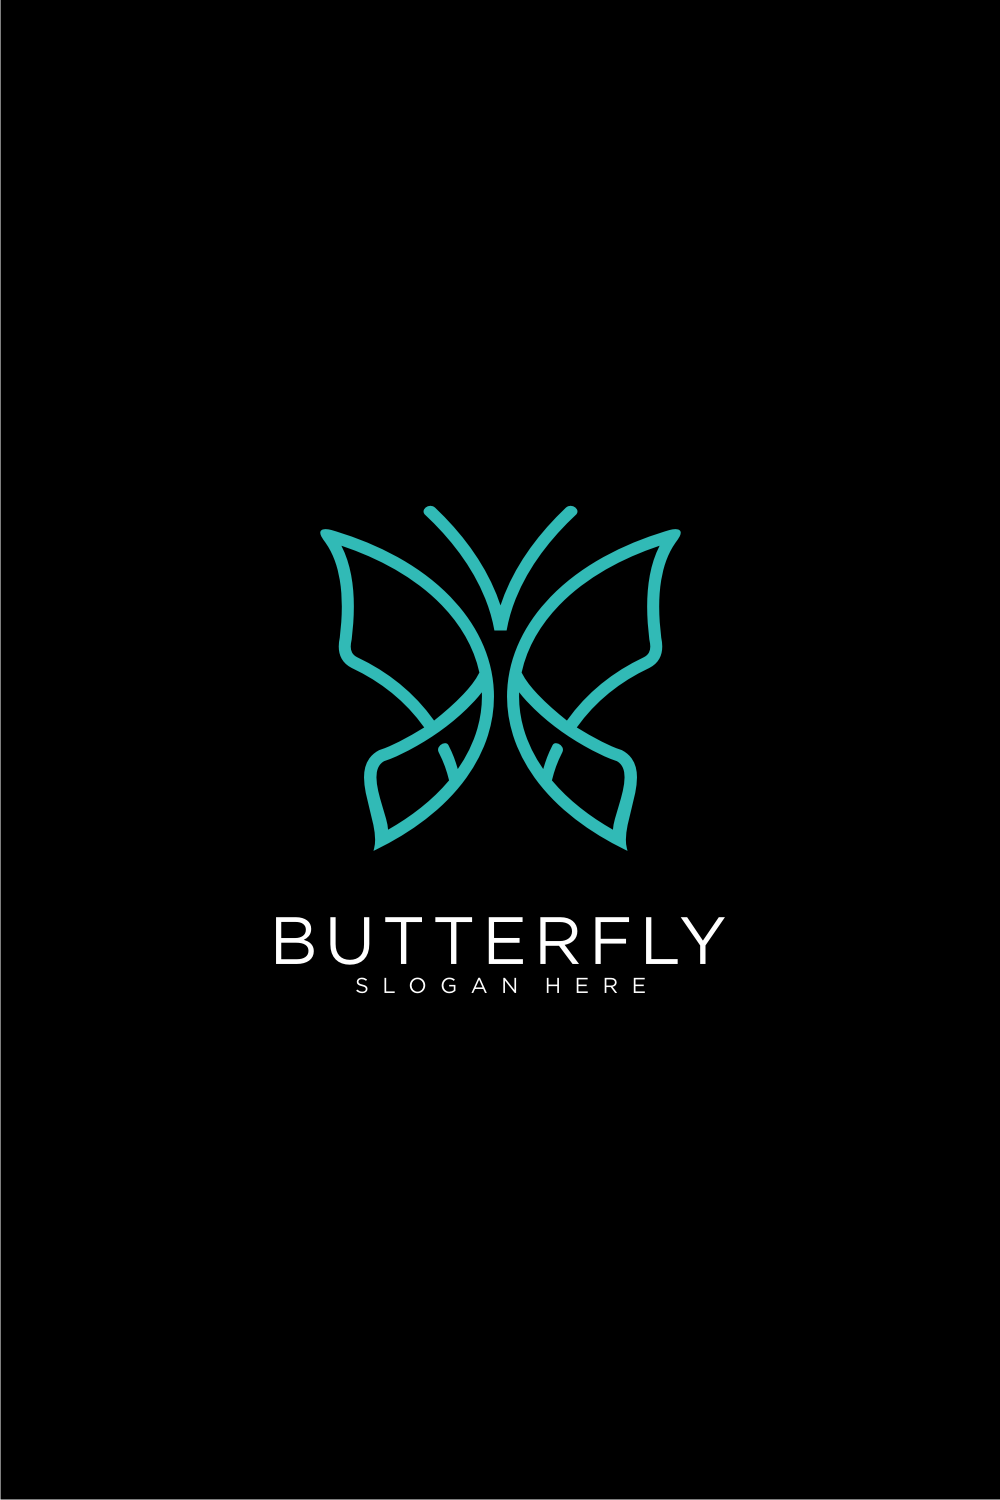 Butterfly Animal Logo Design Vector pinterest image.